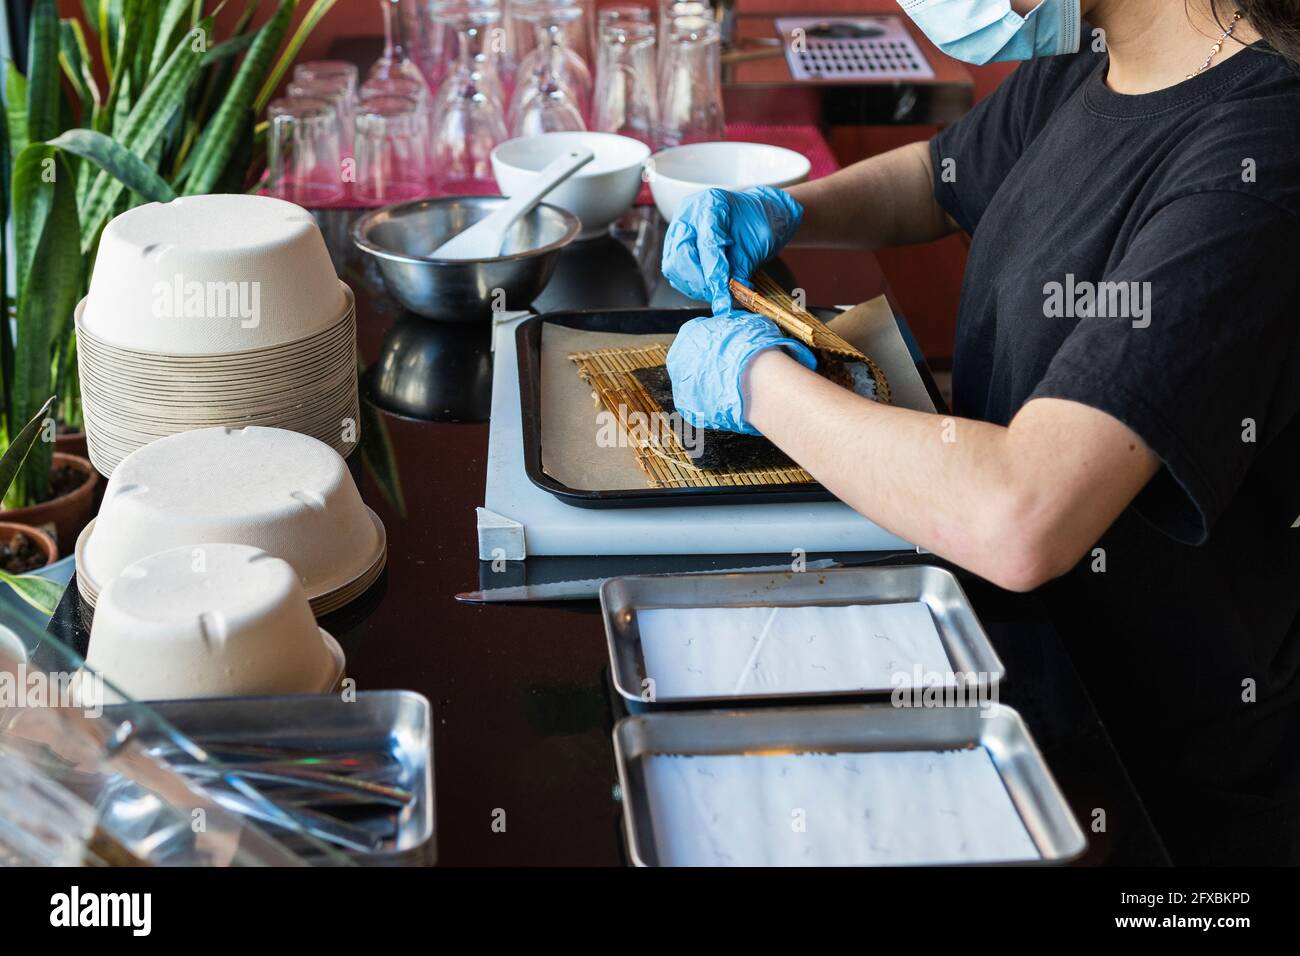 La serveuse emballant les aliments sur le plateau du restaurant pendant la période COVID-19 Banque D'Images